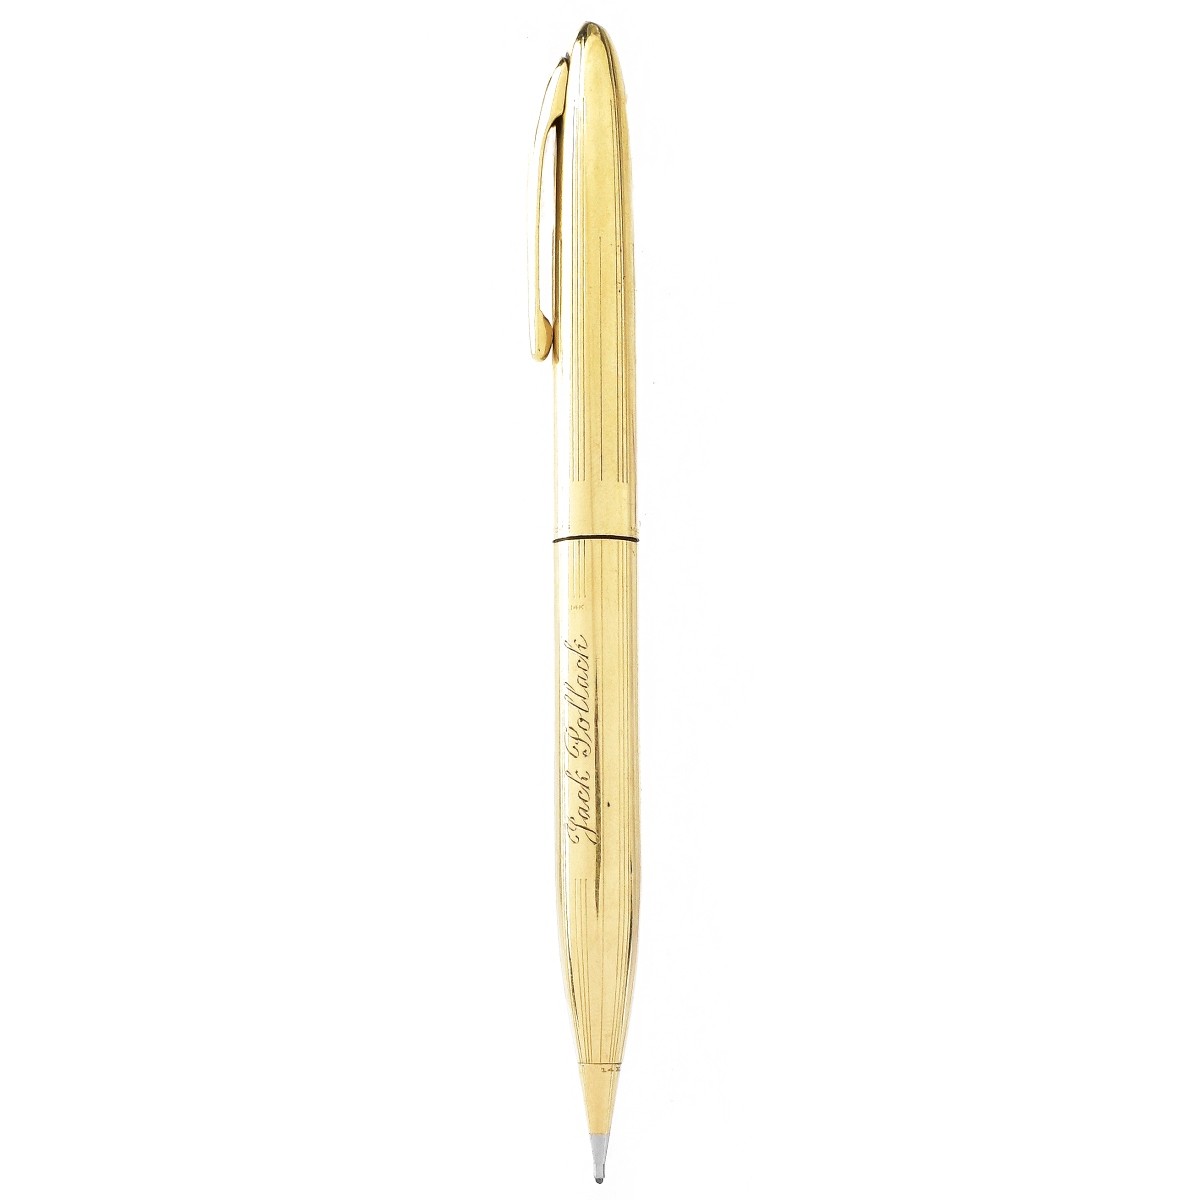 Vintage Sheaffer's 14K Gold Pencil